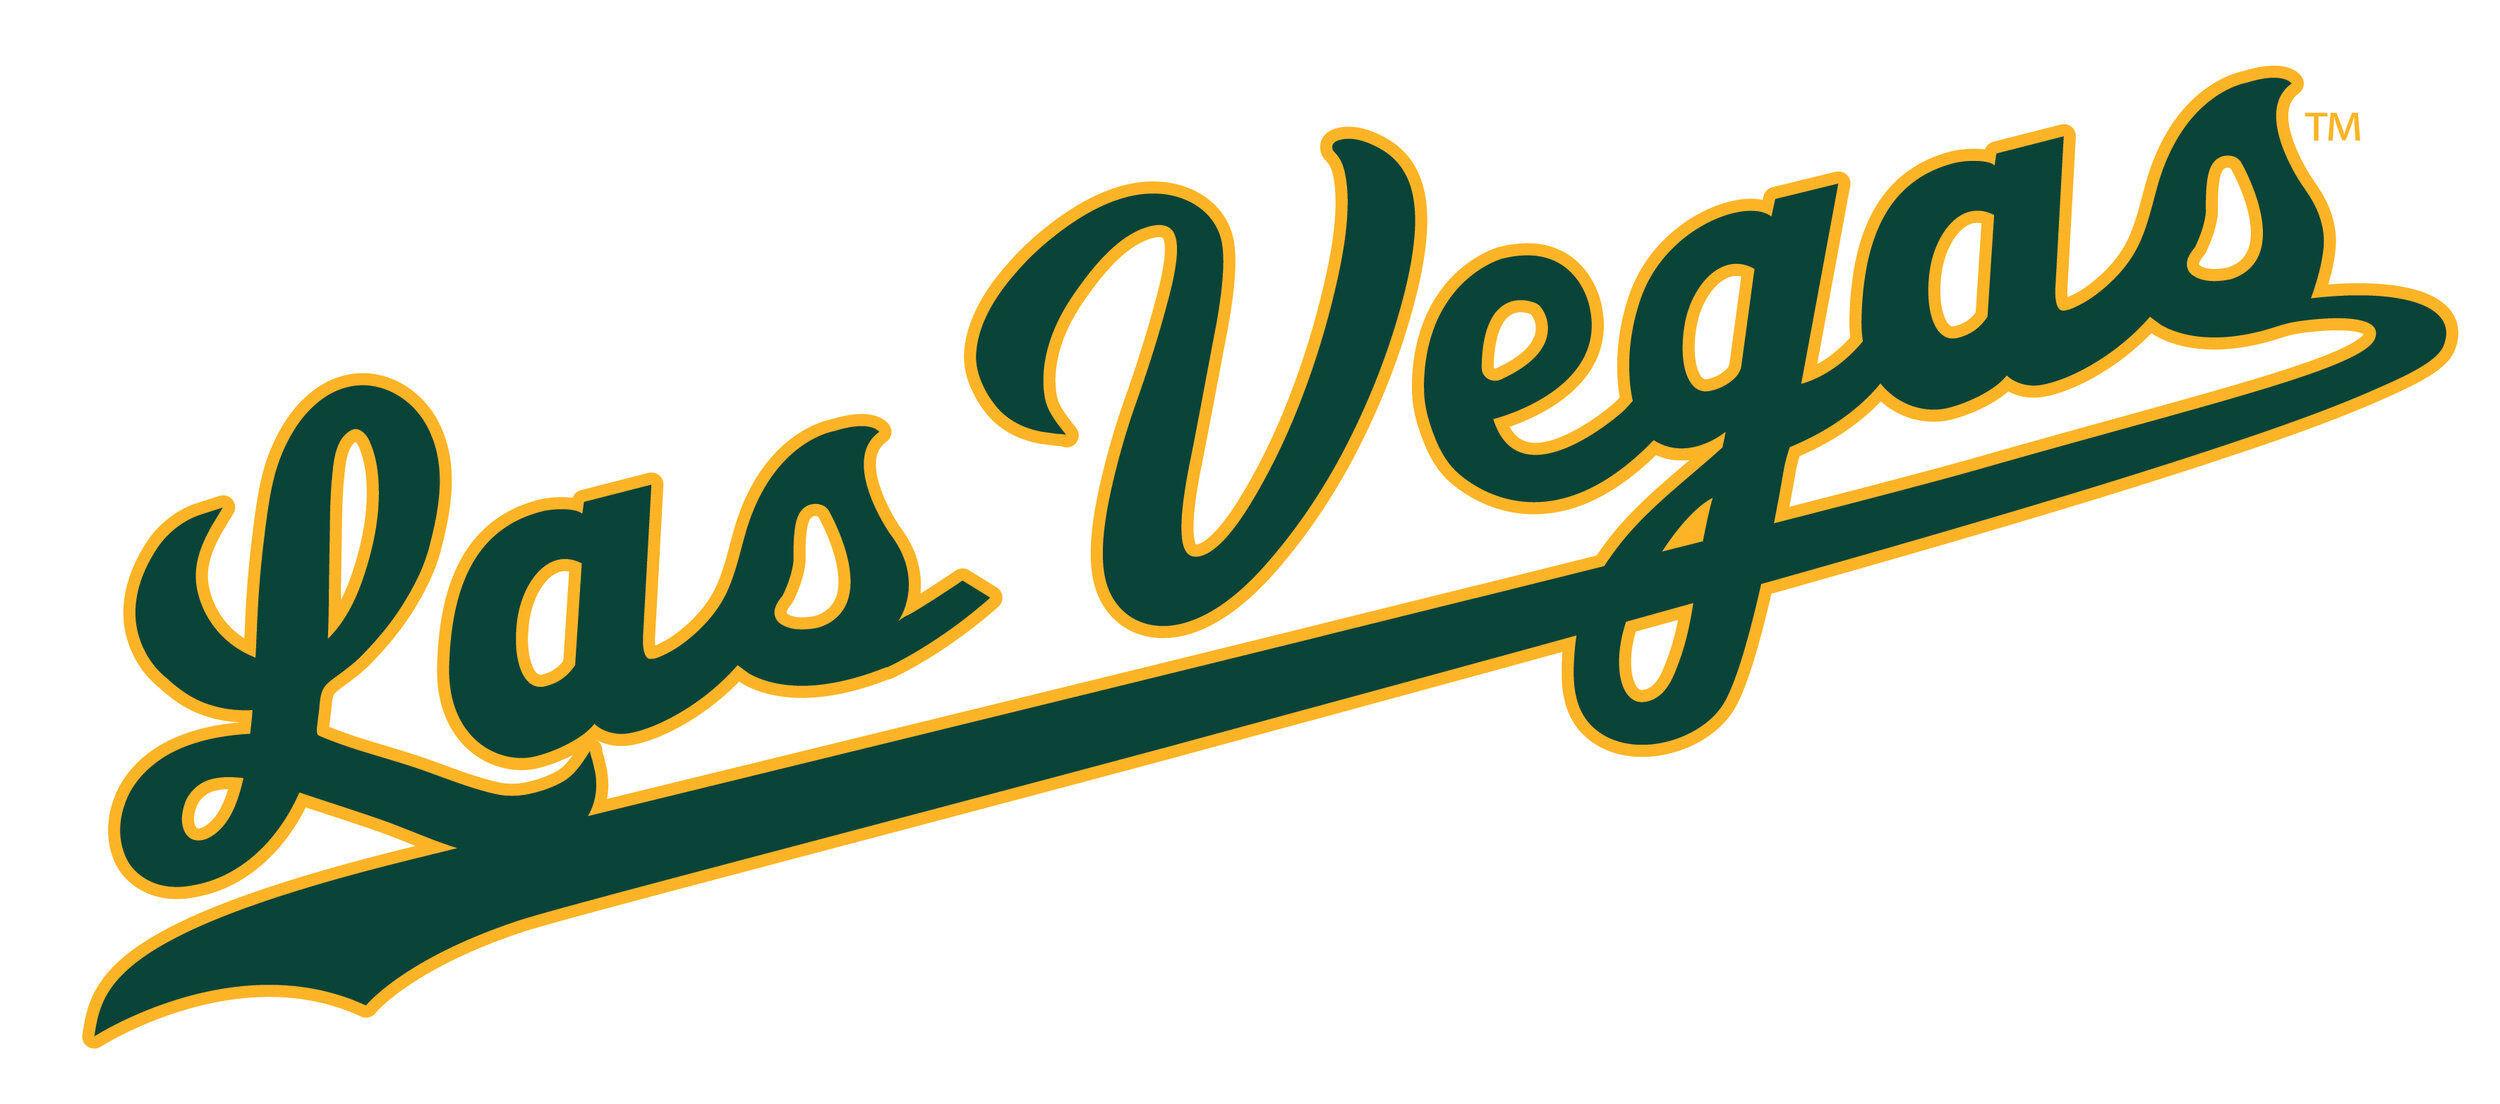 Las Vegas Athletics — Kyle Tellier